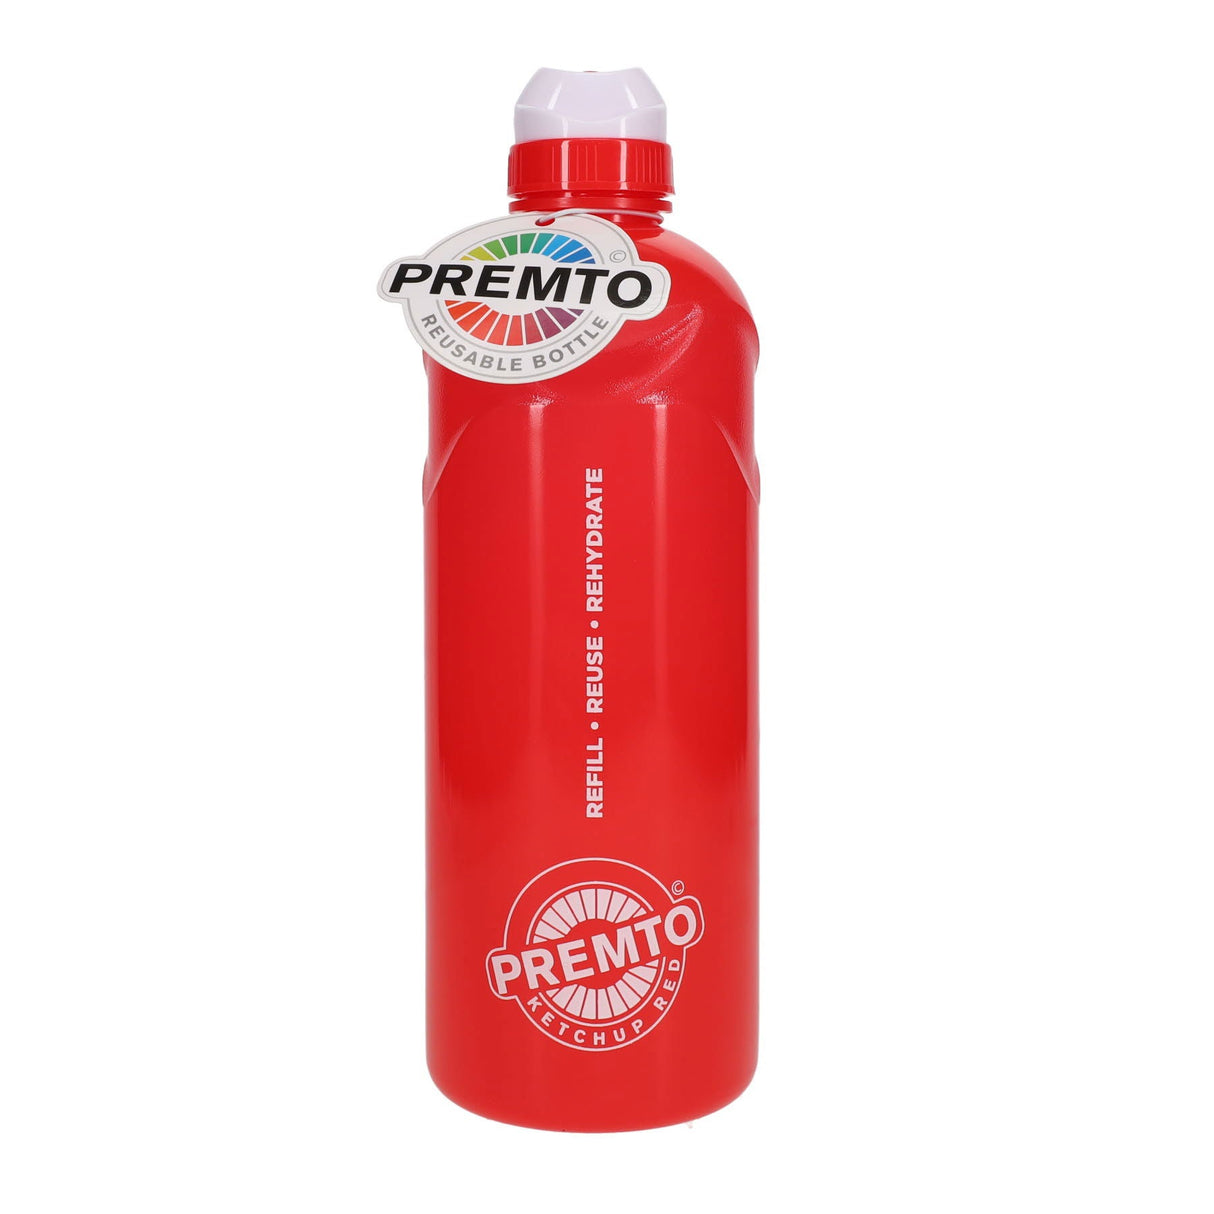 Premto 1 Litre Stealth Bottle - Ketchup Red | Stationery Shop UK